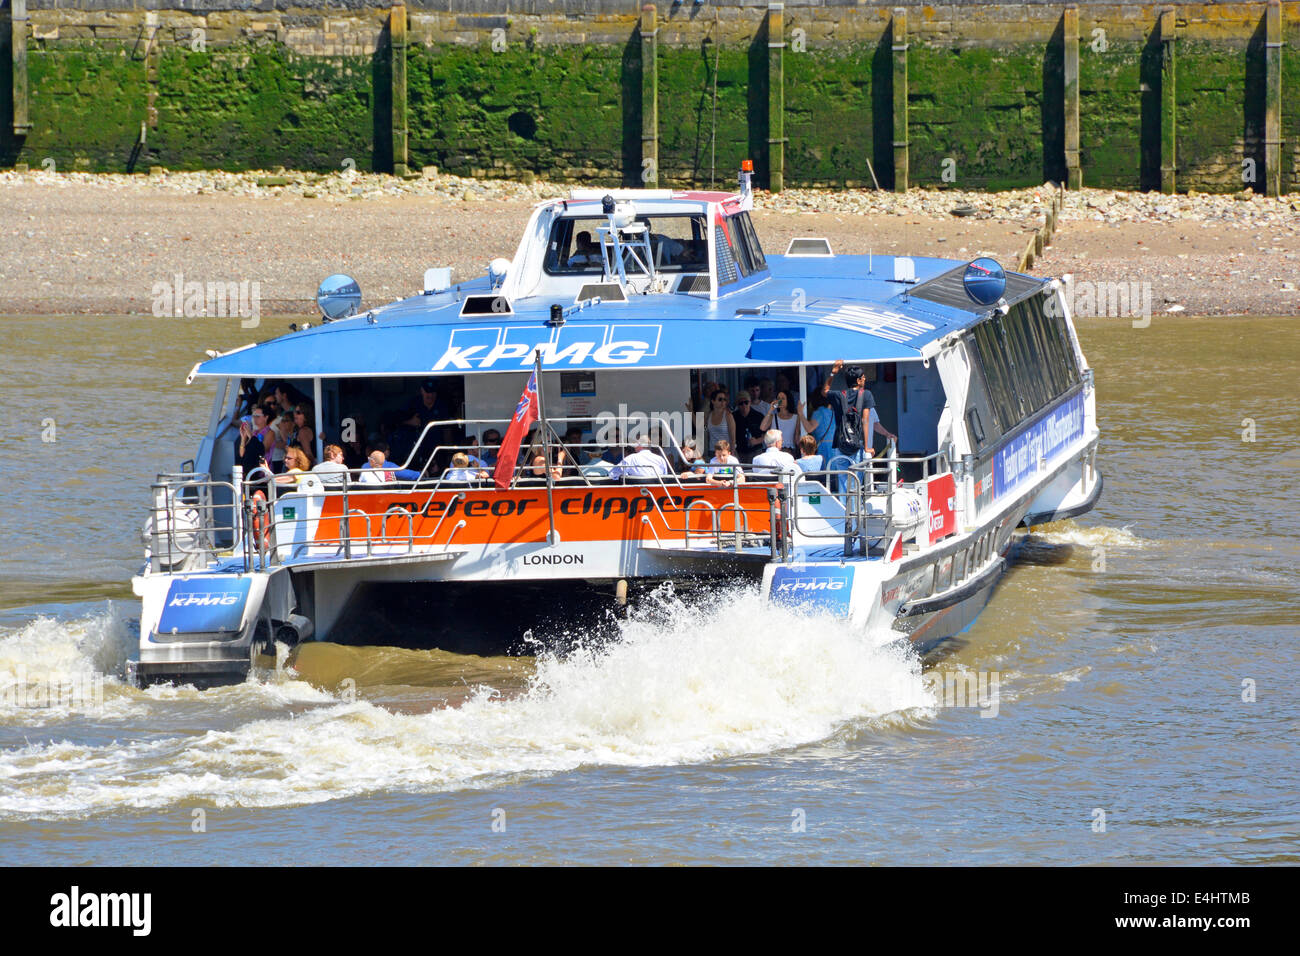 Menschenmenge Passagiere, die auf dem Heck des Thames Clipper reisen katamaran Boot ein öffentlicher Transport Flussbus Service auf London Berühmter Fluss England Großbritannien Stockfoto